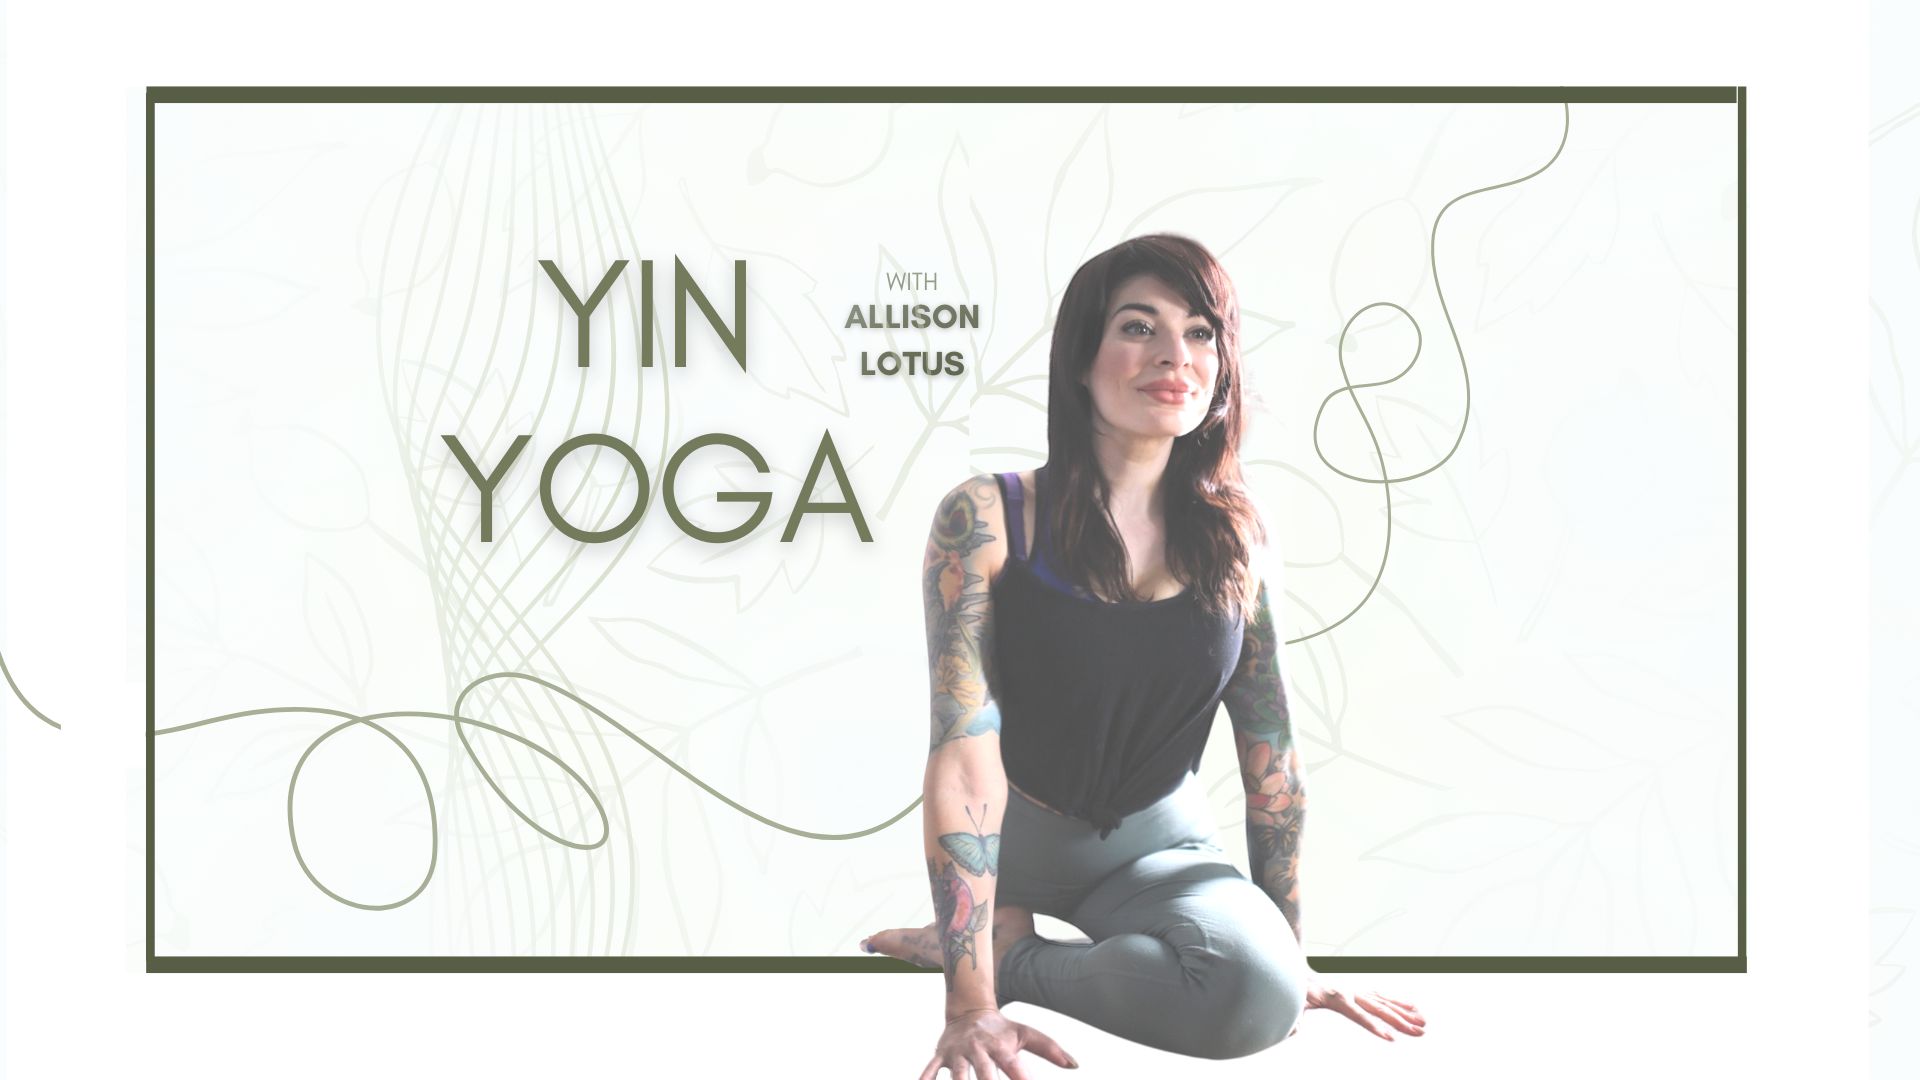 Yin Yoga with Allison Lotus